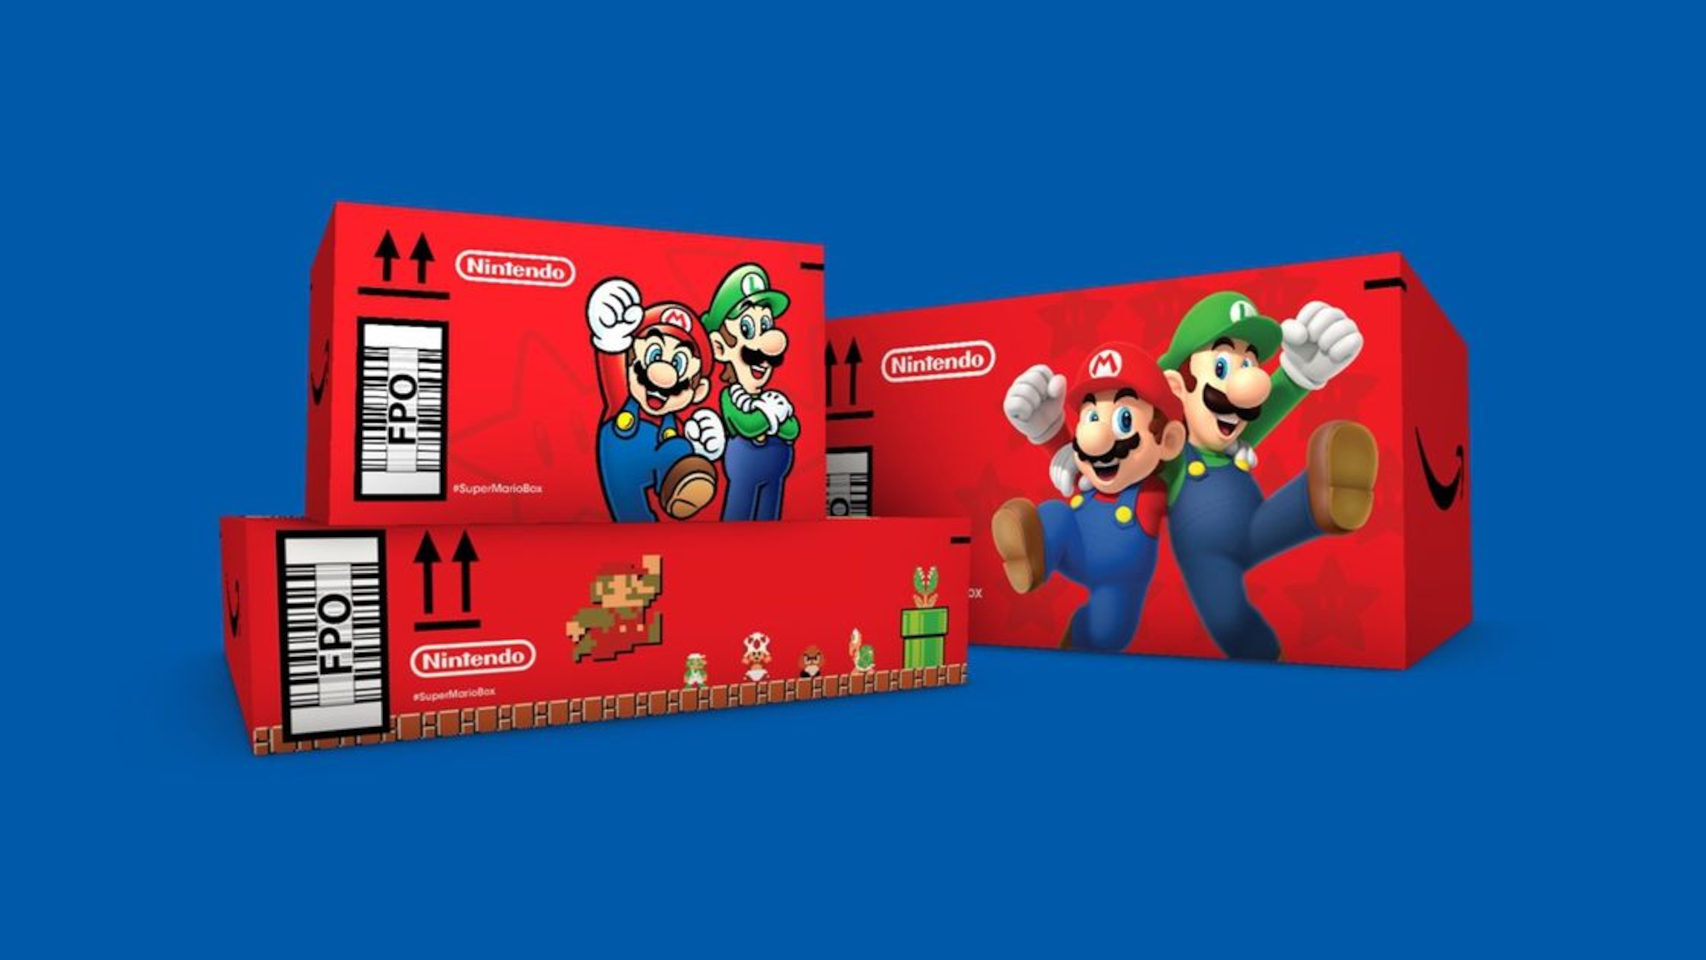 Las cajas especiales de Nintendo que usará Amazon